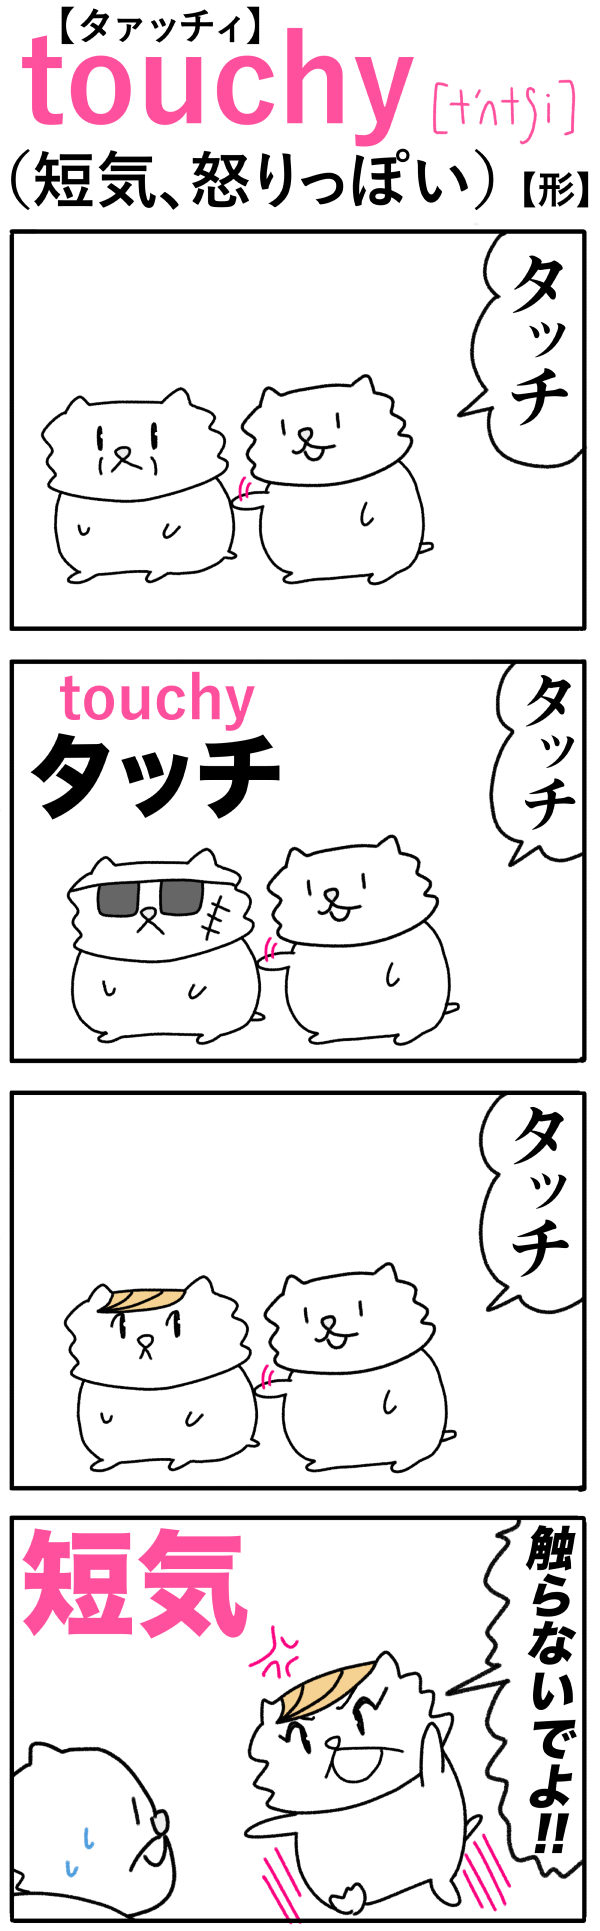 touchy（短気）の語呂合わせ英単語